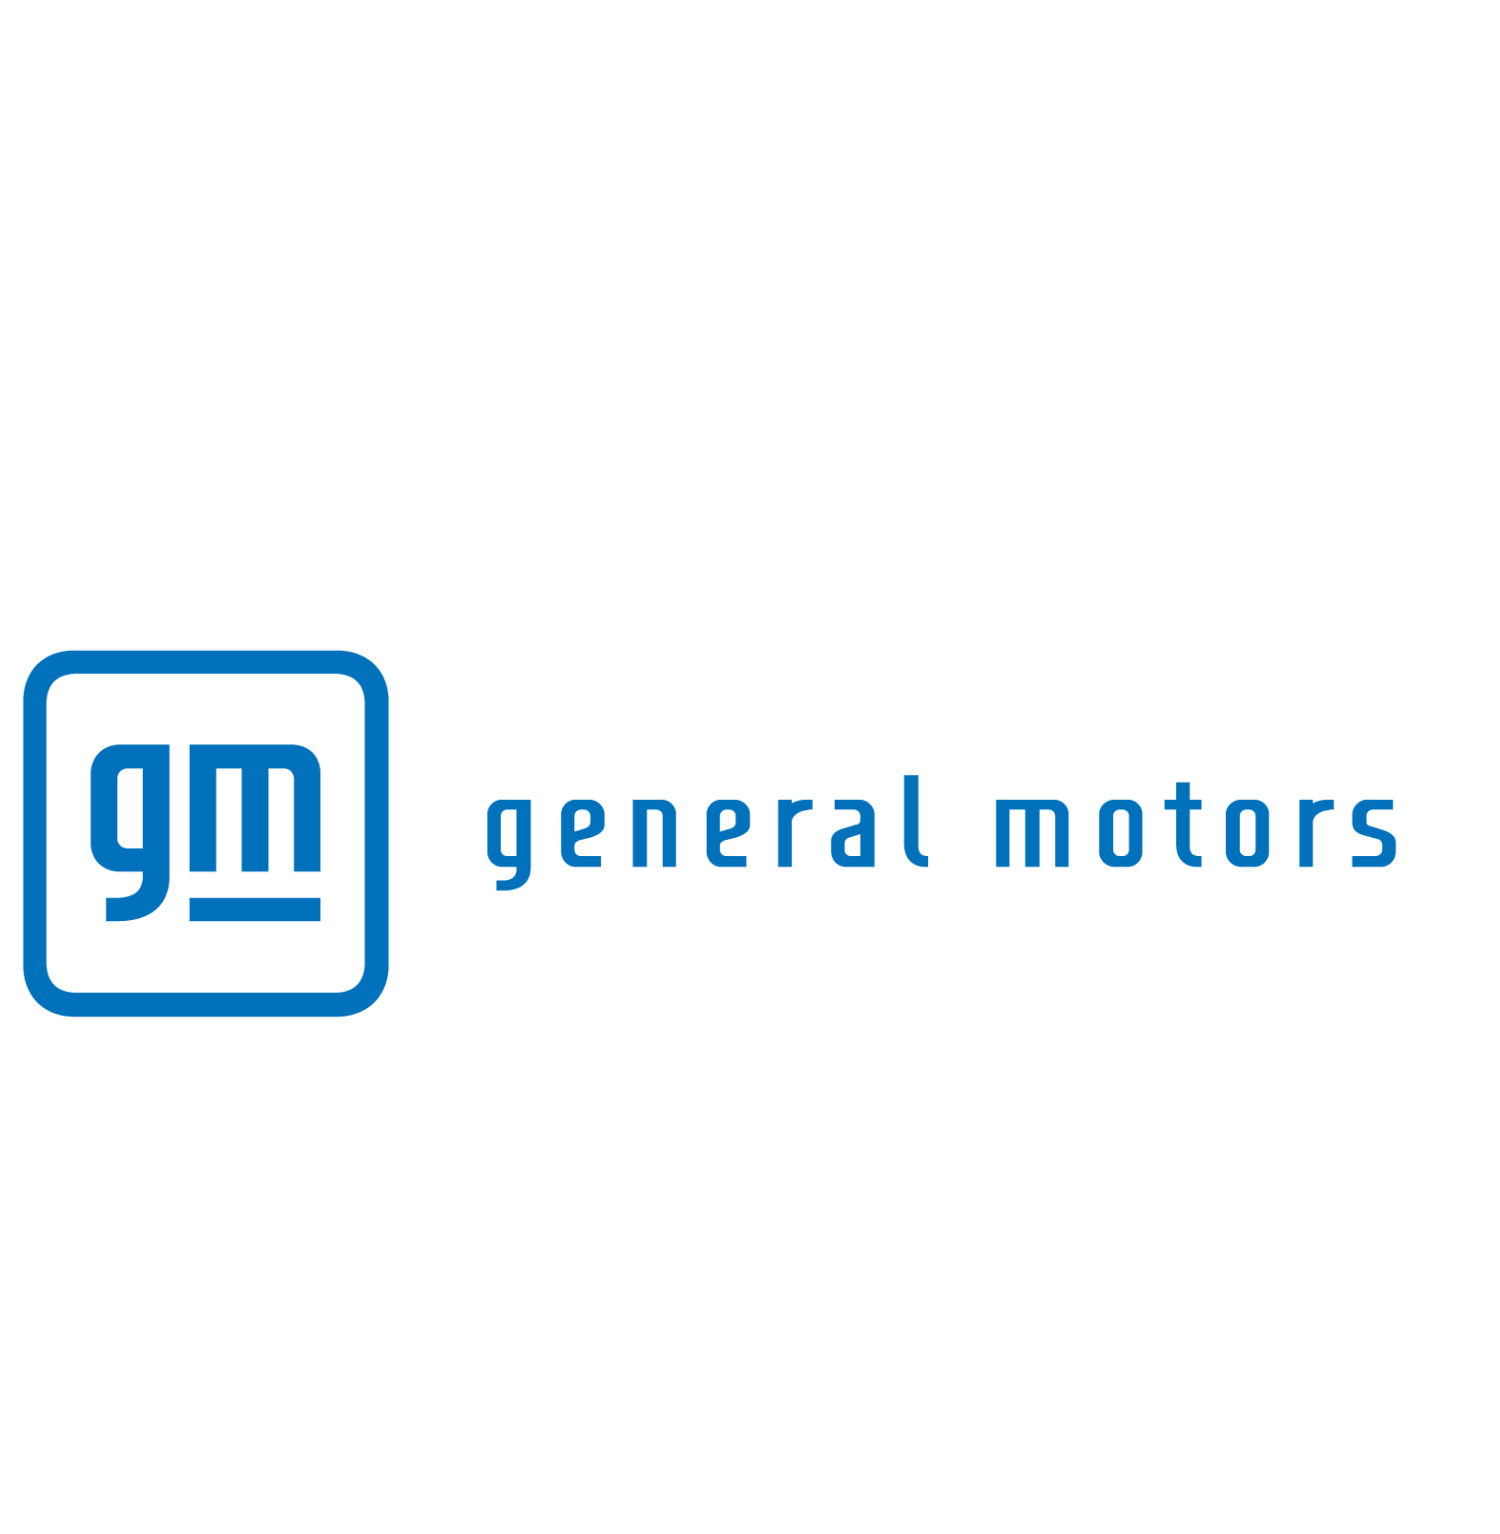 ENTERPRISE - General Motors-1